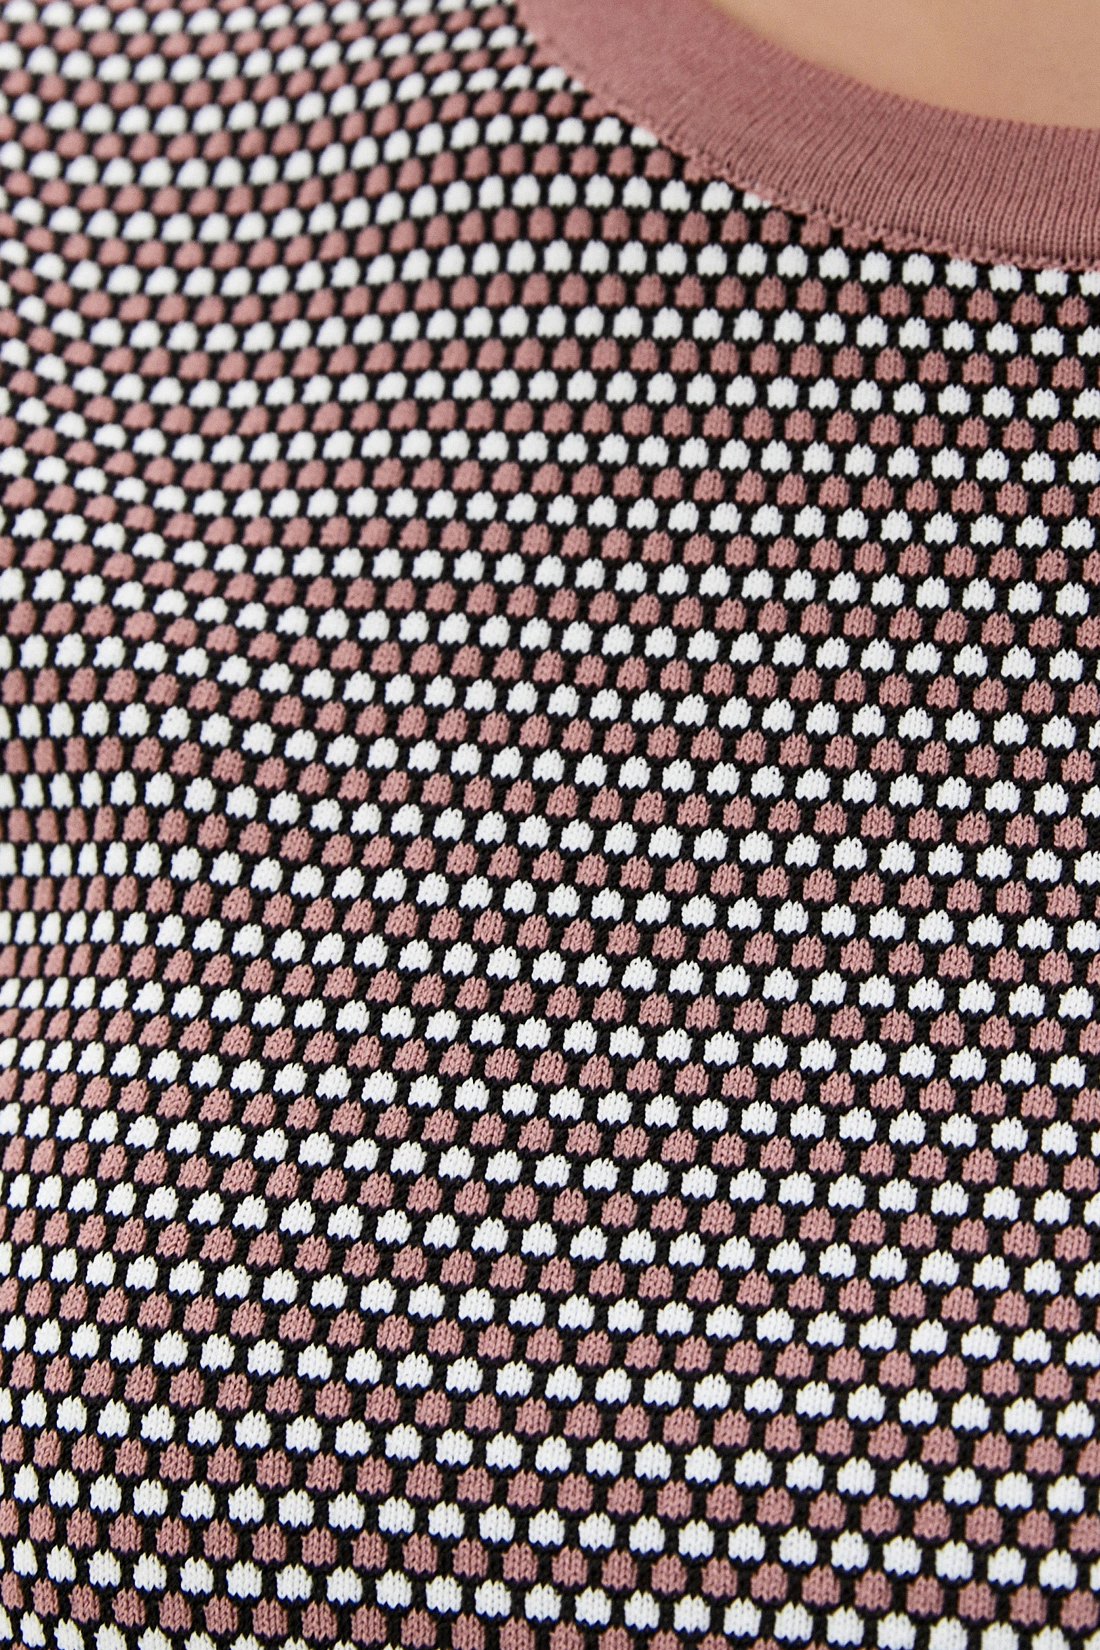 Джемпер с жаккардовым узором (арт. baon B130042), размер XL, цвет розовый Джемпер с жаккардовым узором (арт. baon B130042) - фото 3